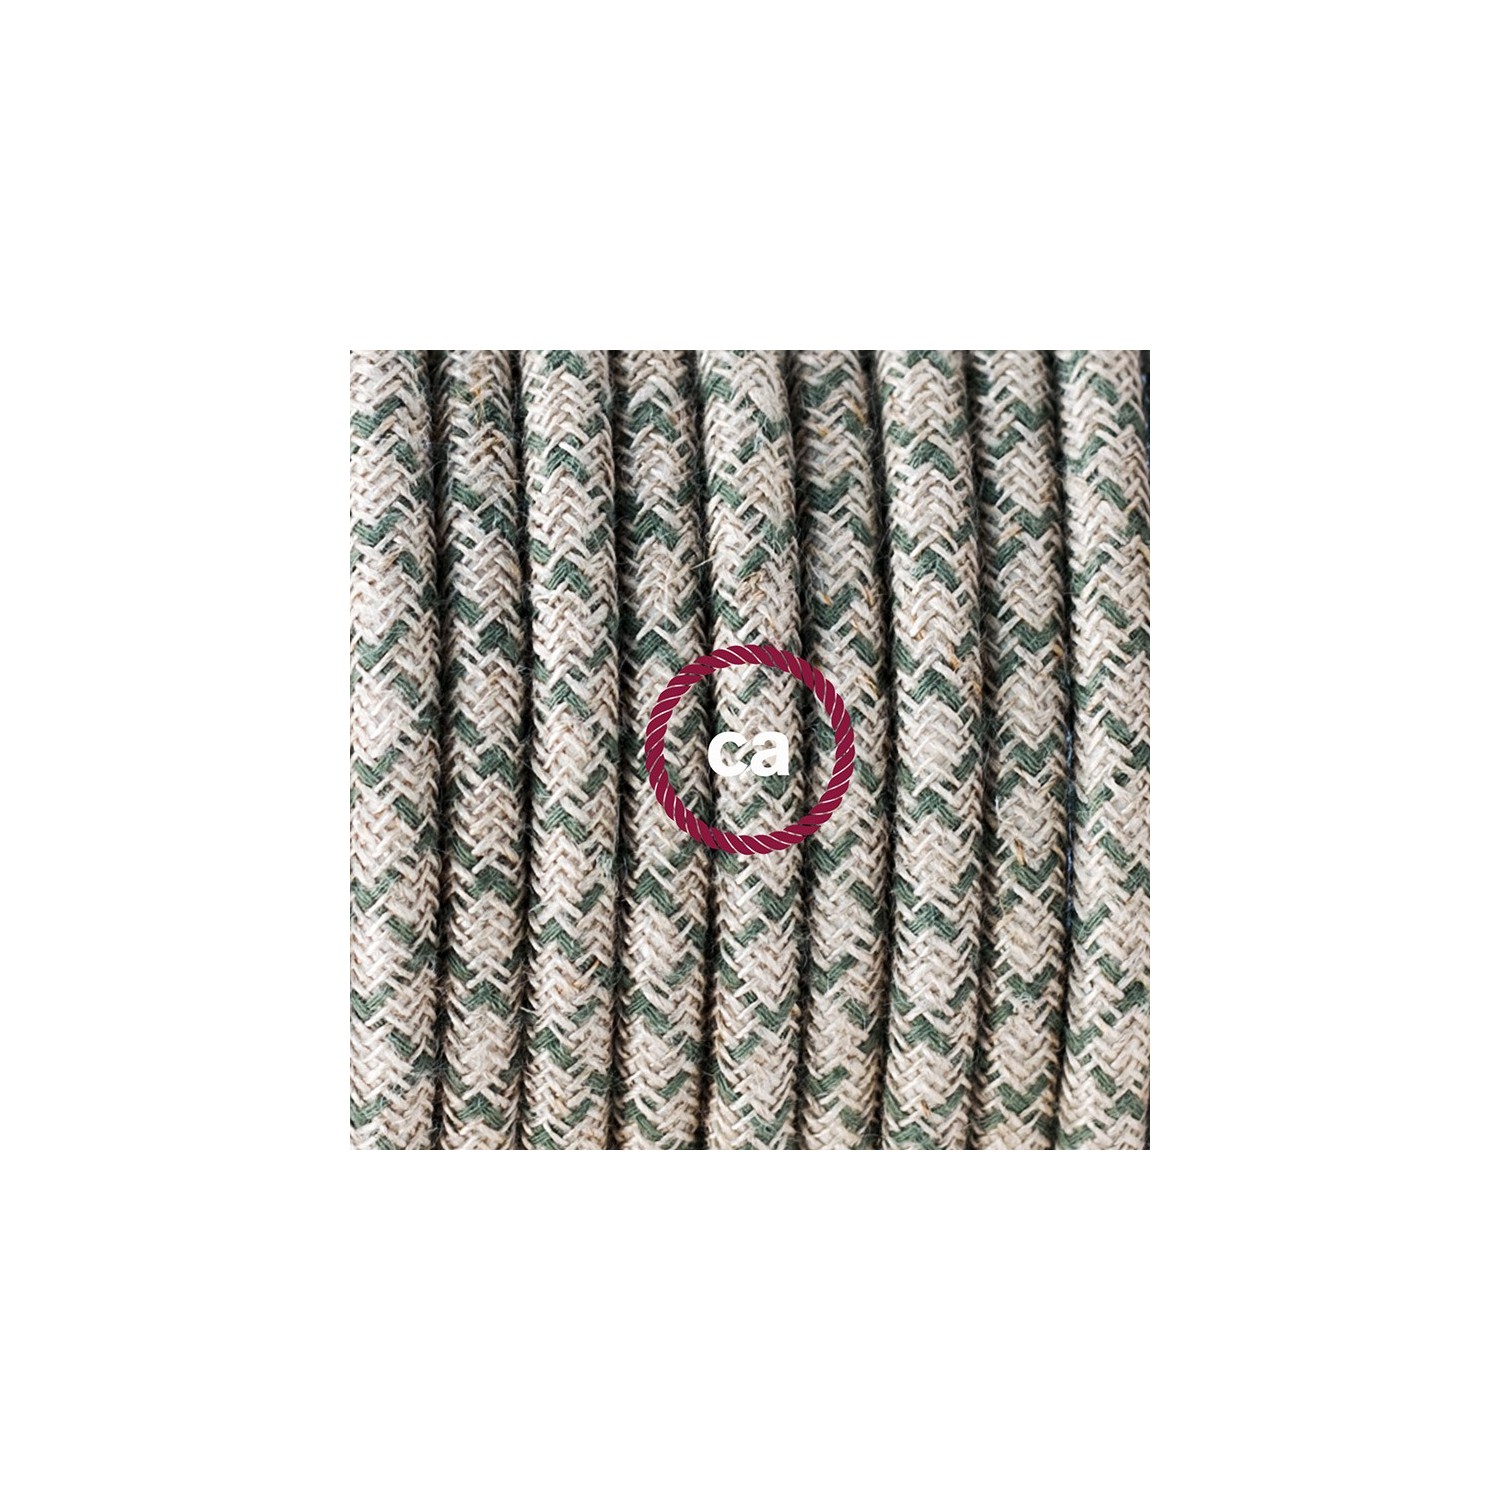 "Snake" hanglamp met extra lang strijkijzersnoer diamant motief tijm linnen en katoen RD62